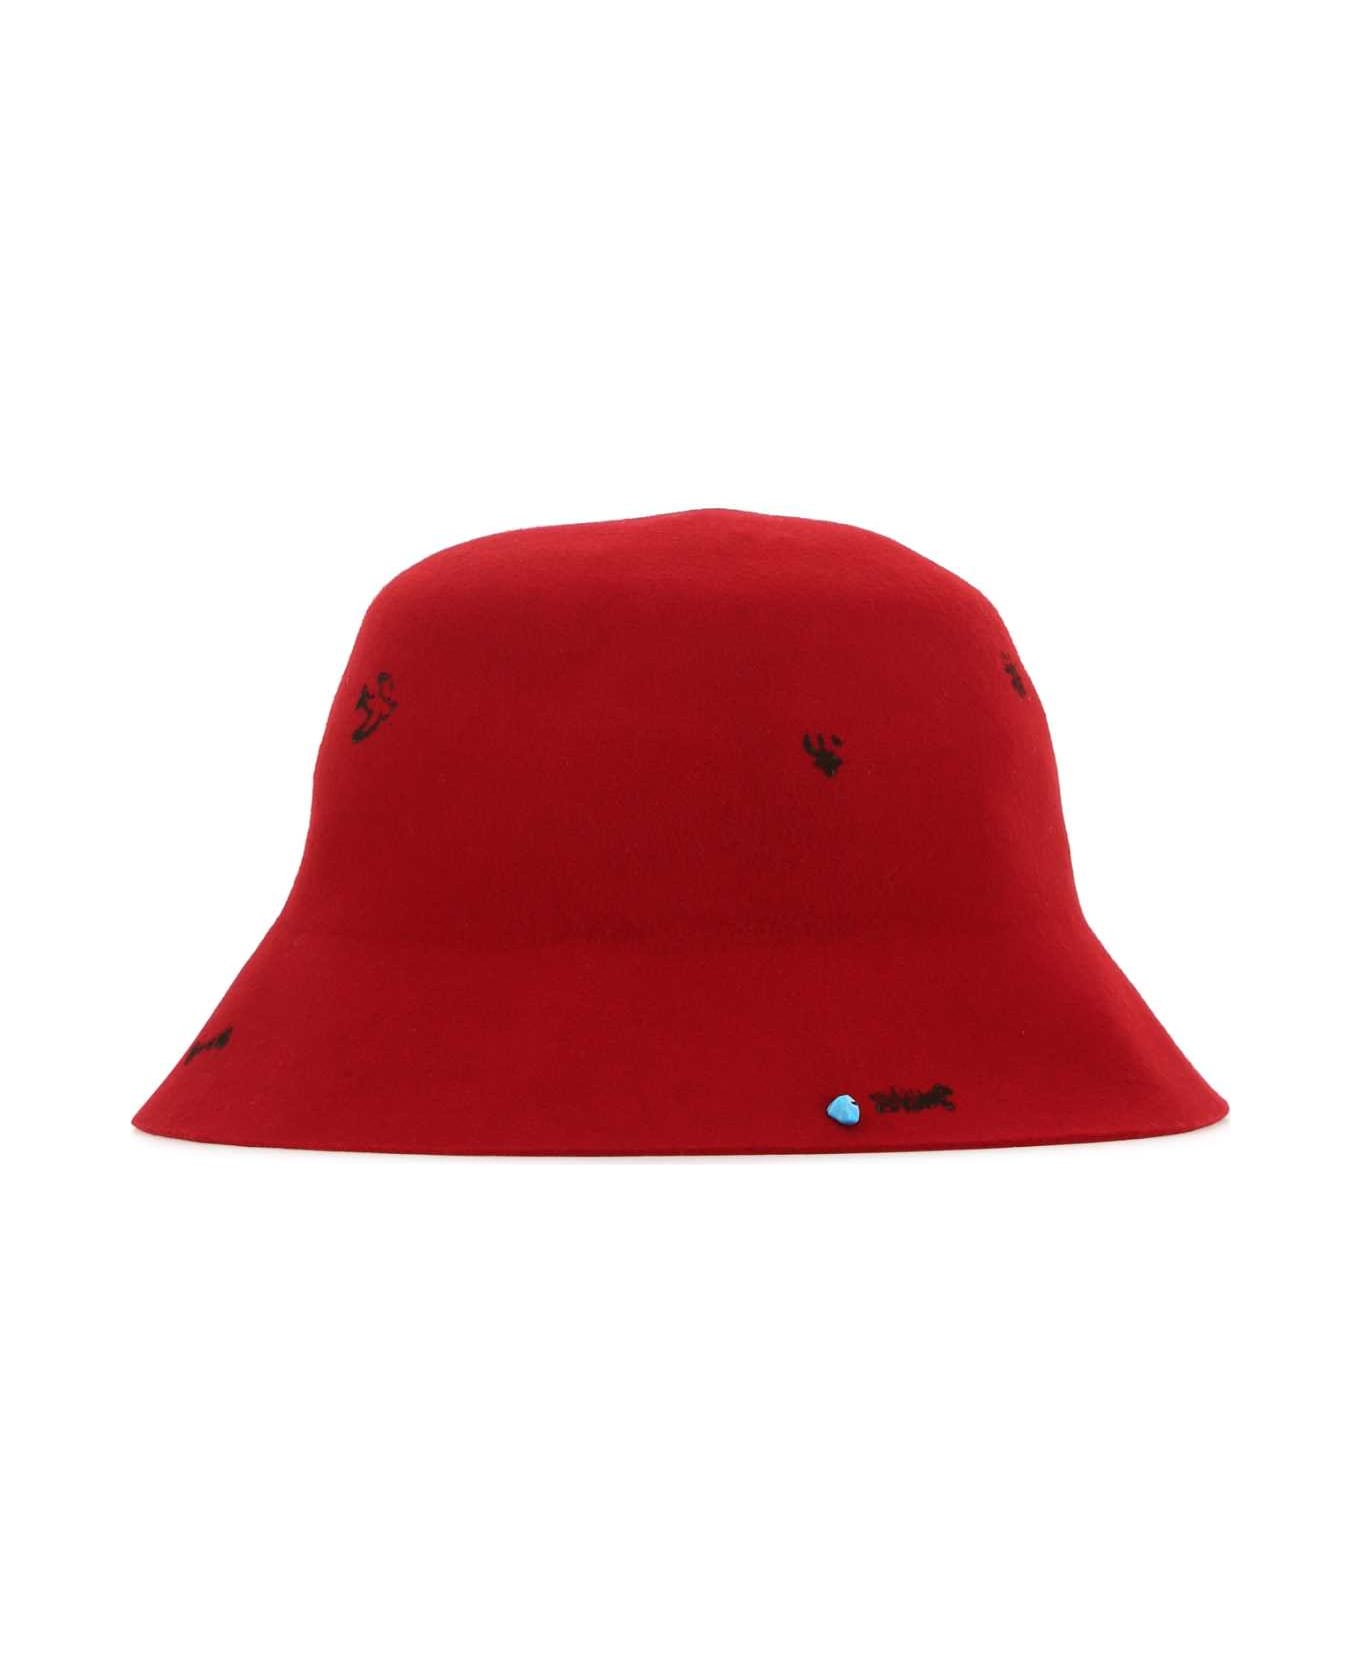 Super Duper Hats Red Felt Freya Bucket Hat - IBISCO